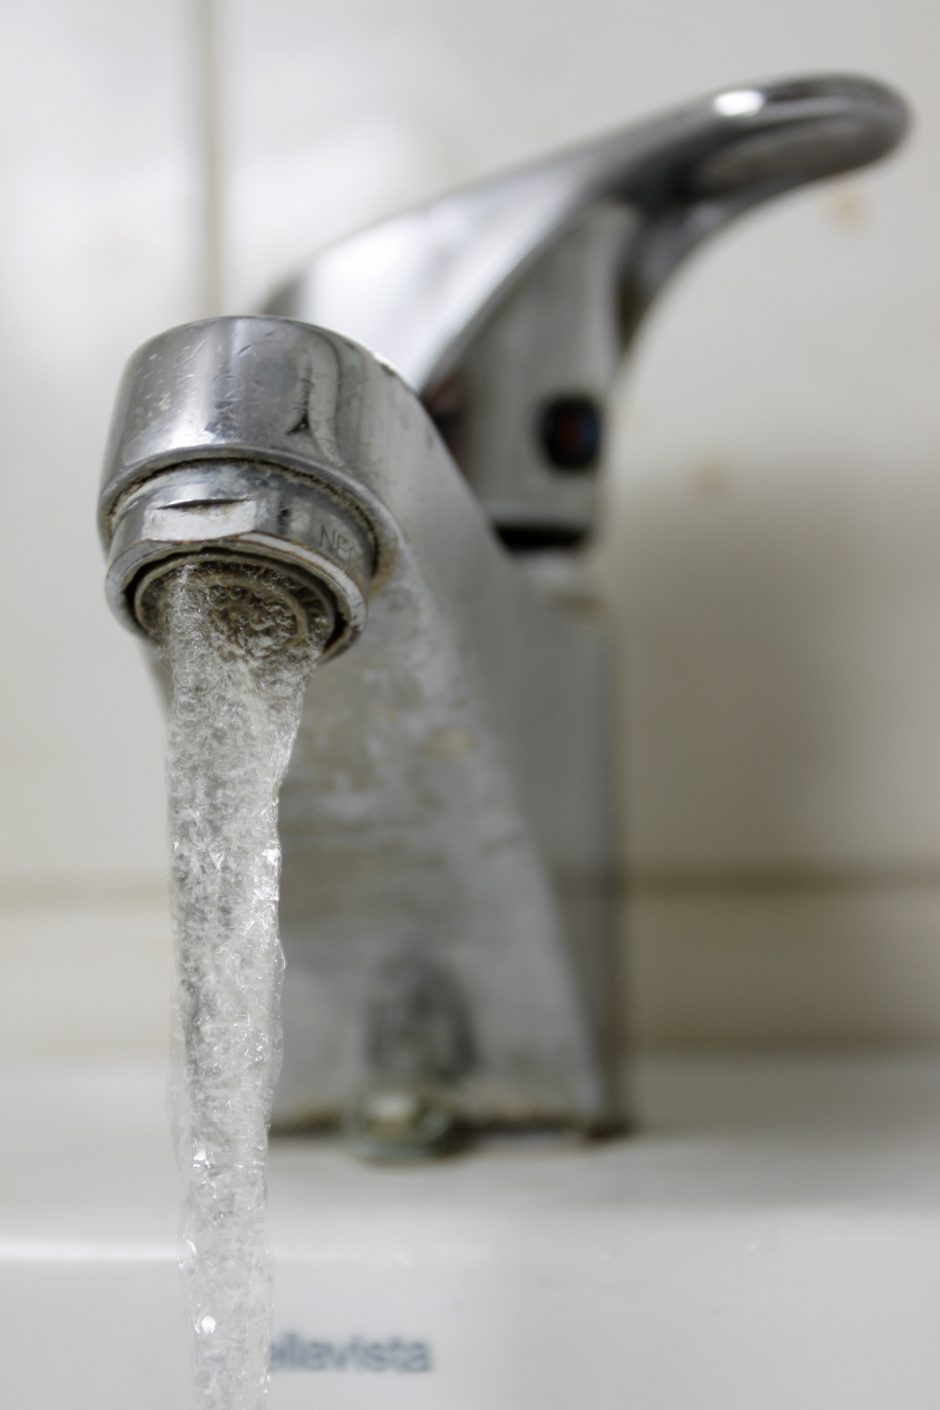 Siūloma į geriamojo vandens kainą įtraukti ir kokybės indeksą